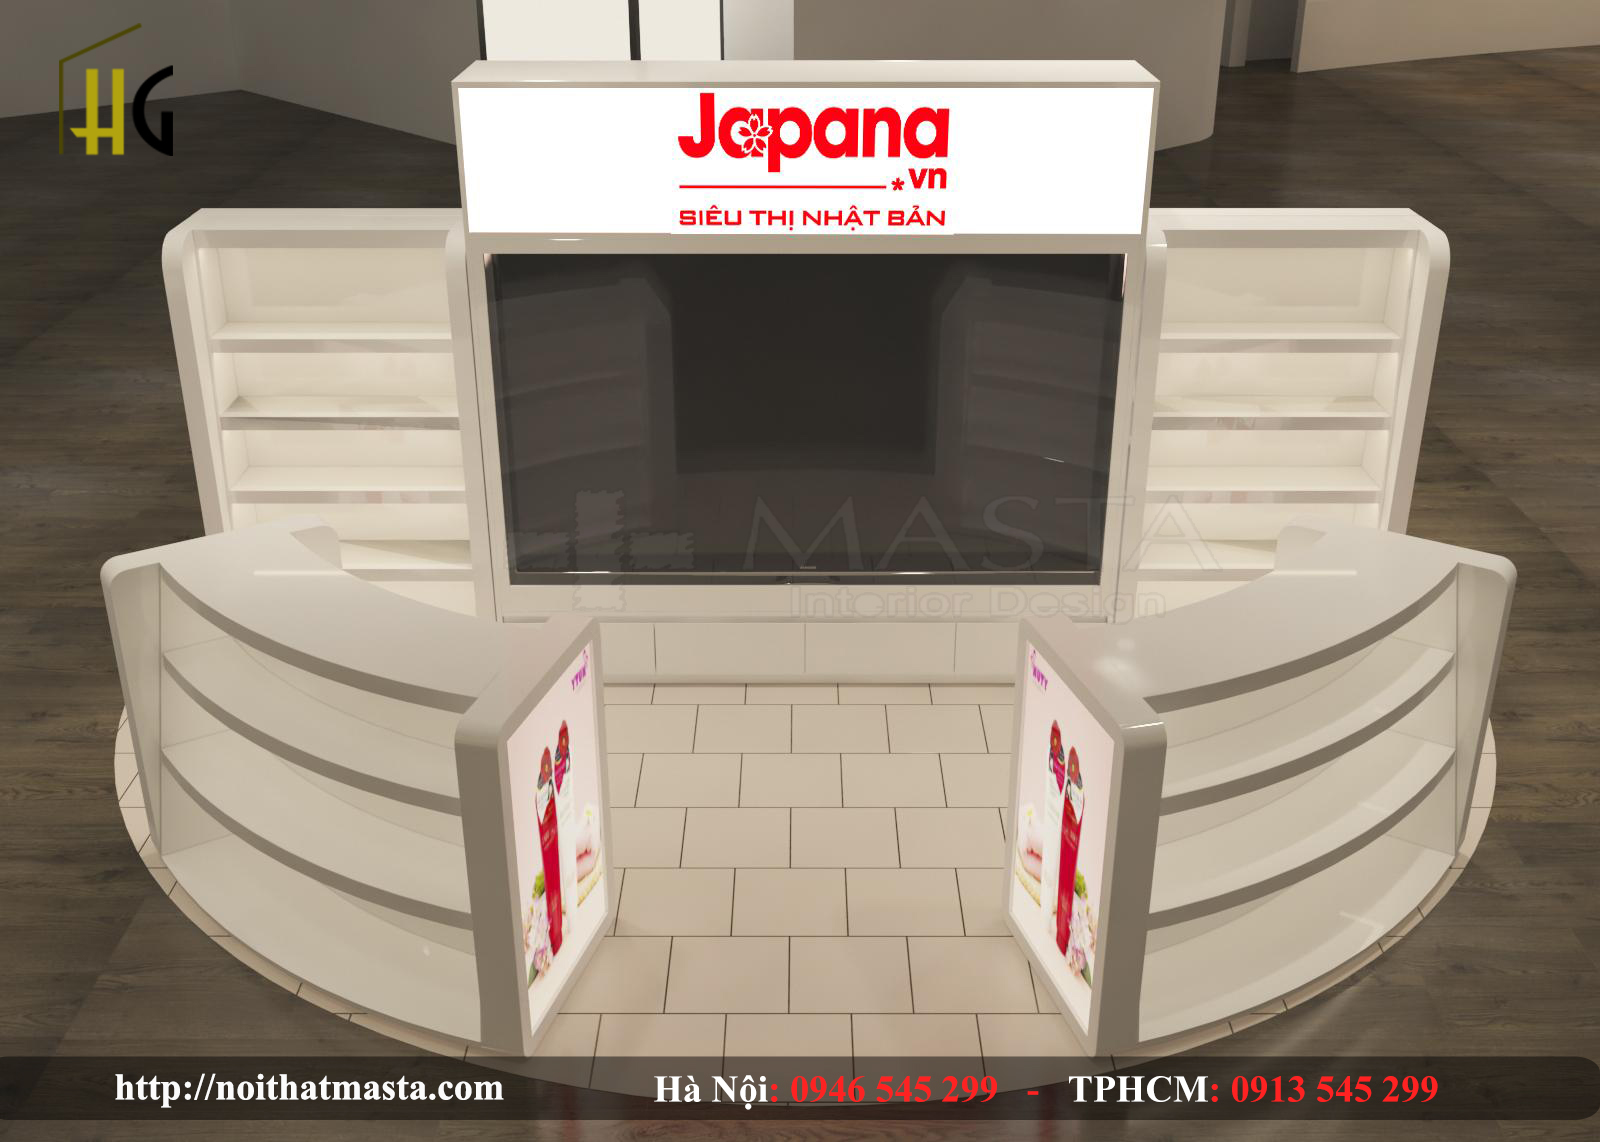 Khu vực bày sản phẩm mẫu của Japanna